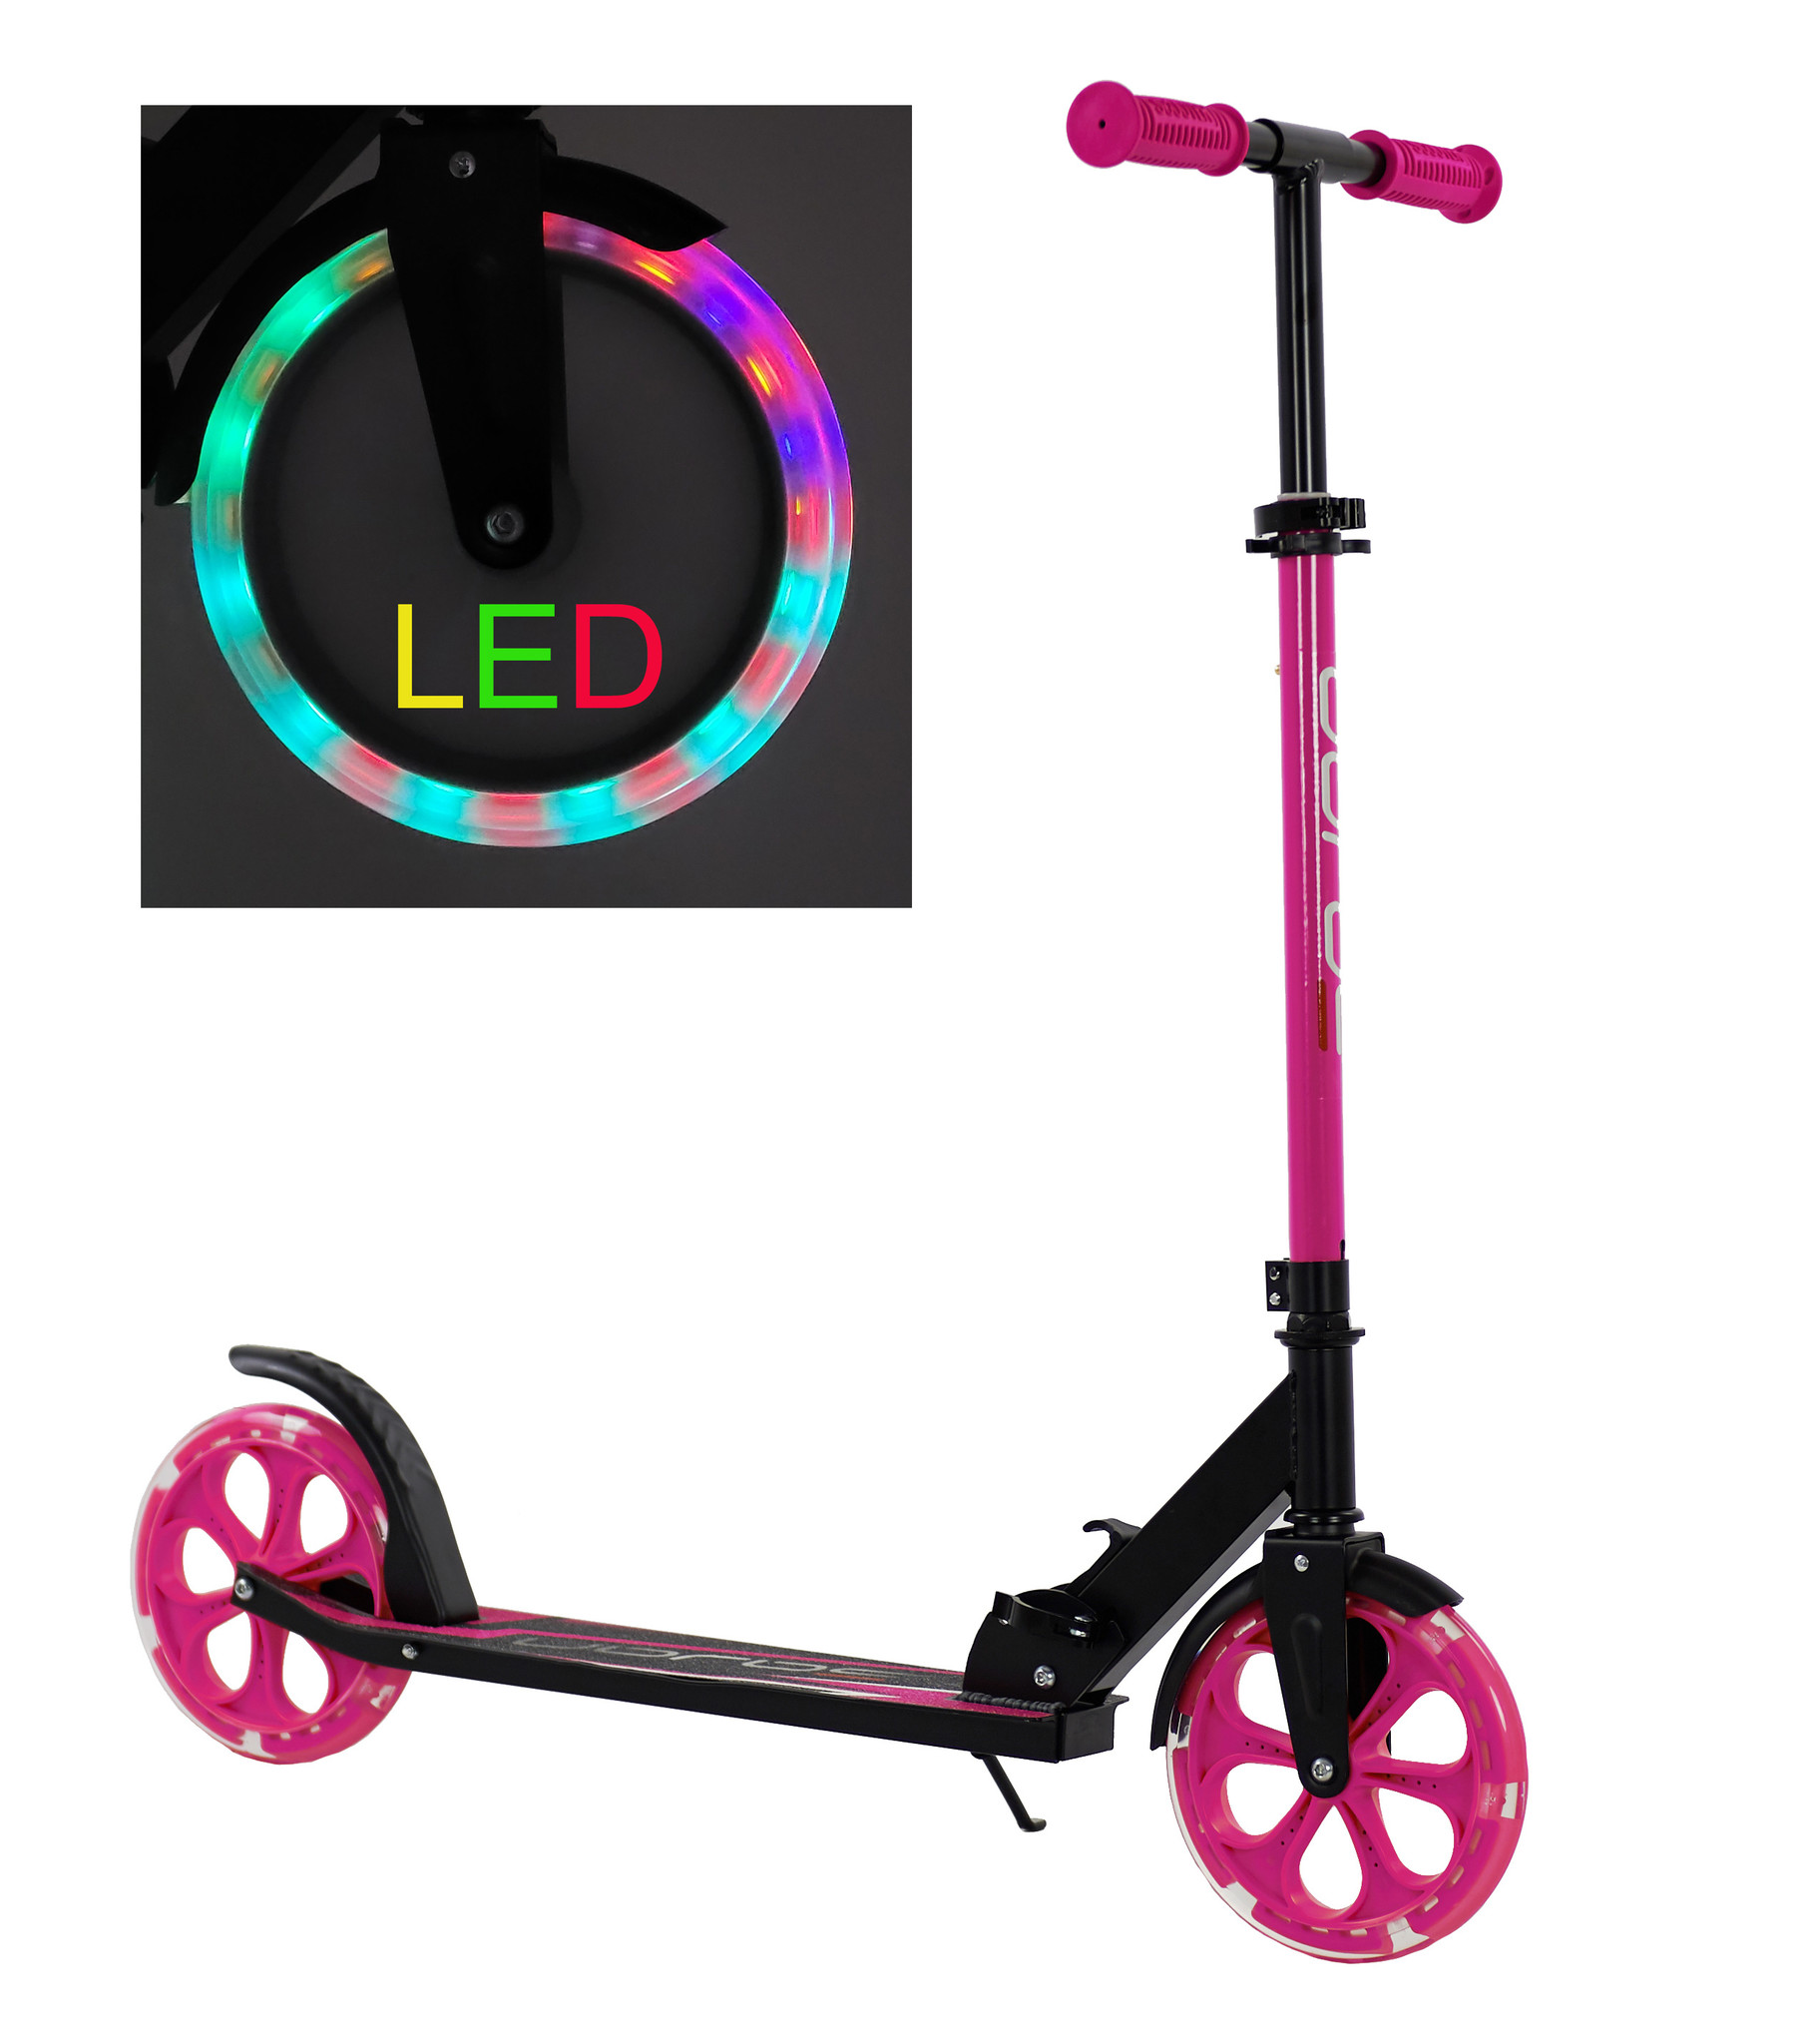 ergens bij betrokken zijn Schurend afstuderen Sajan step met LED verlichte wielen Roze-Zwart | Prijskiller.nl